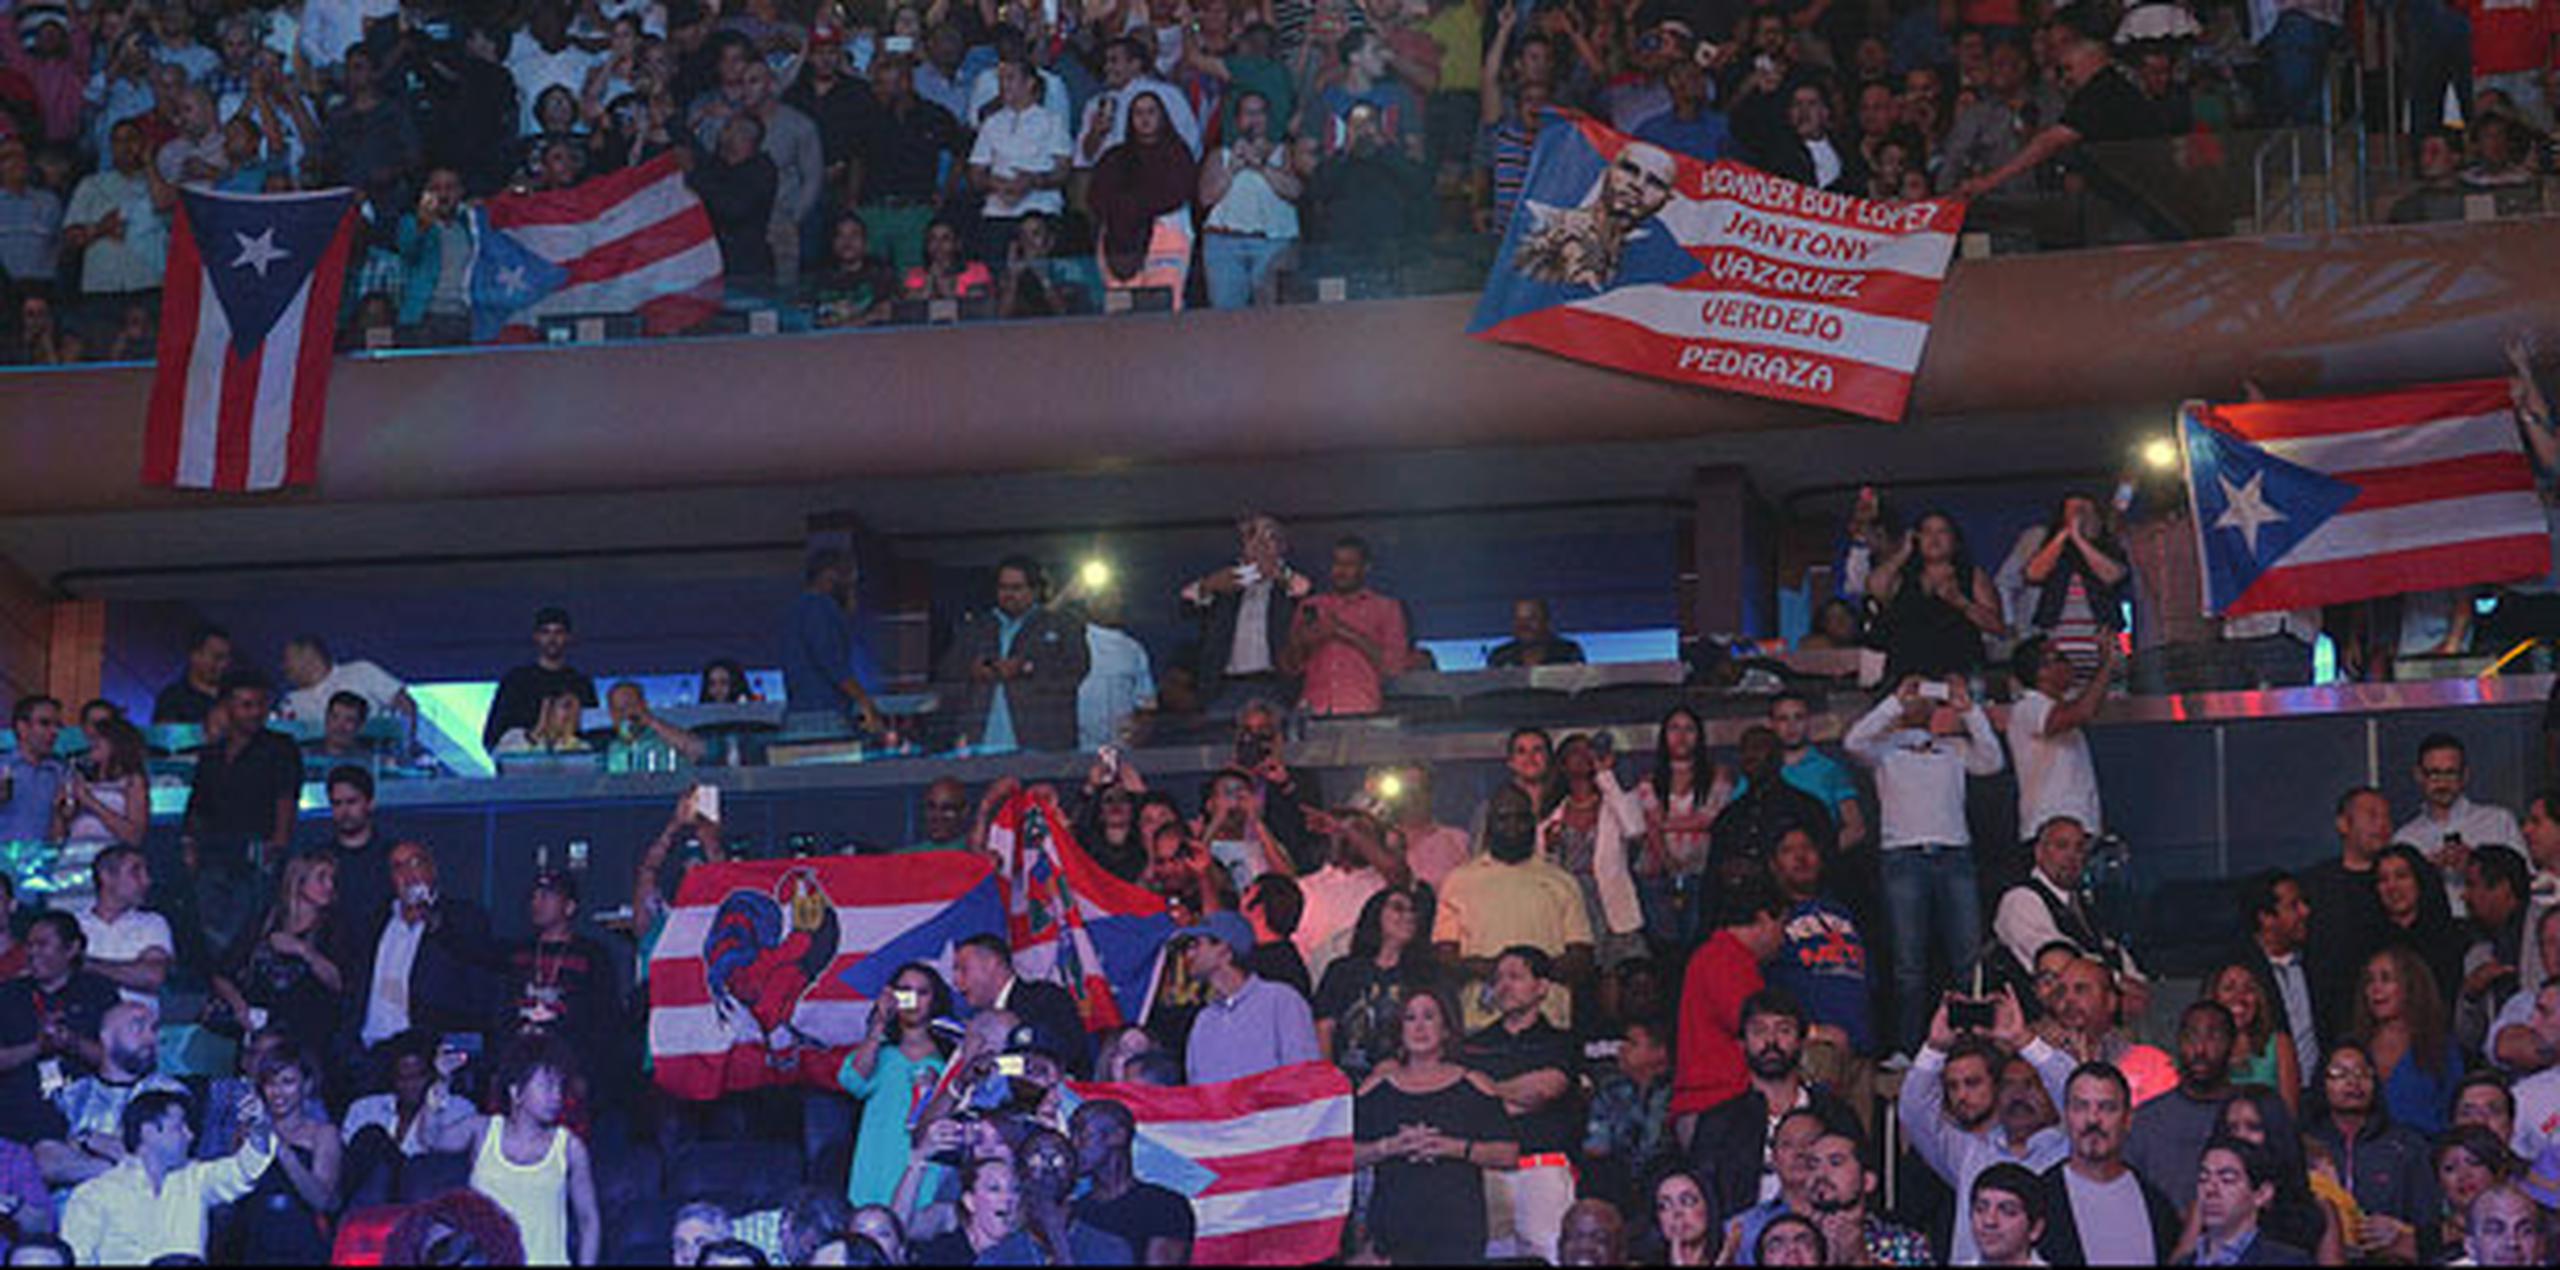 Uno tras otro, los púgiles boricuas fueron subiendo a un ring rodeado de miles de rostros desconocidos acompañados por voces que pronunciaron hasta el cansancio el orgullo de ser puertorriqueño. (jrodriguez1@gfrmedia.com)